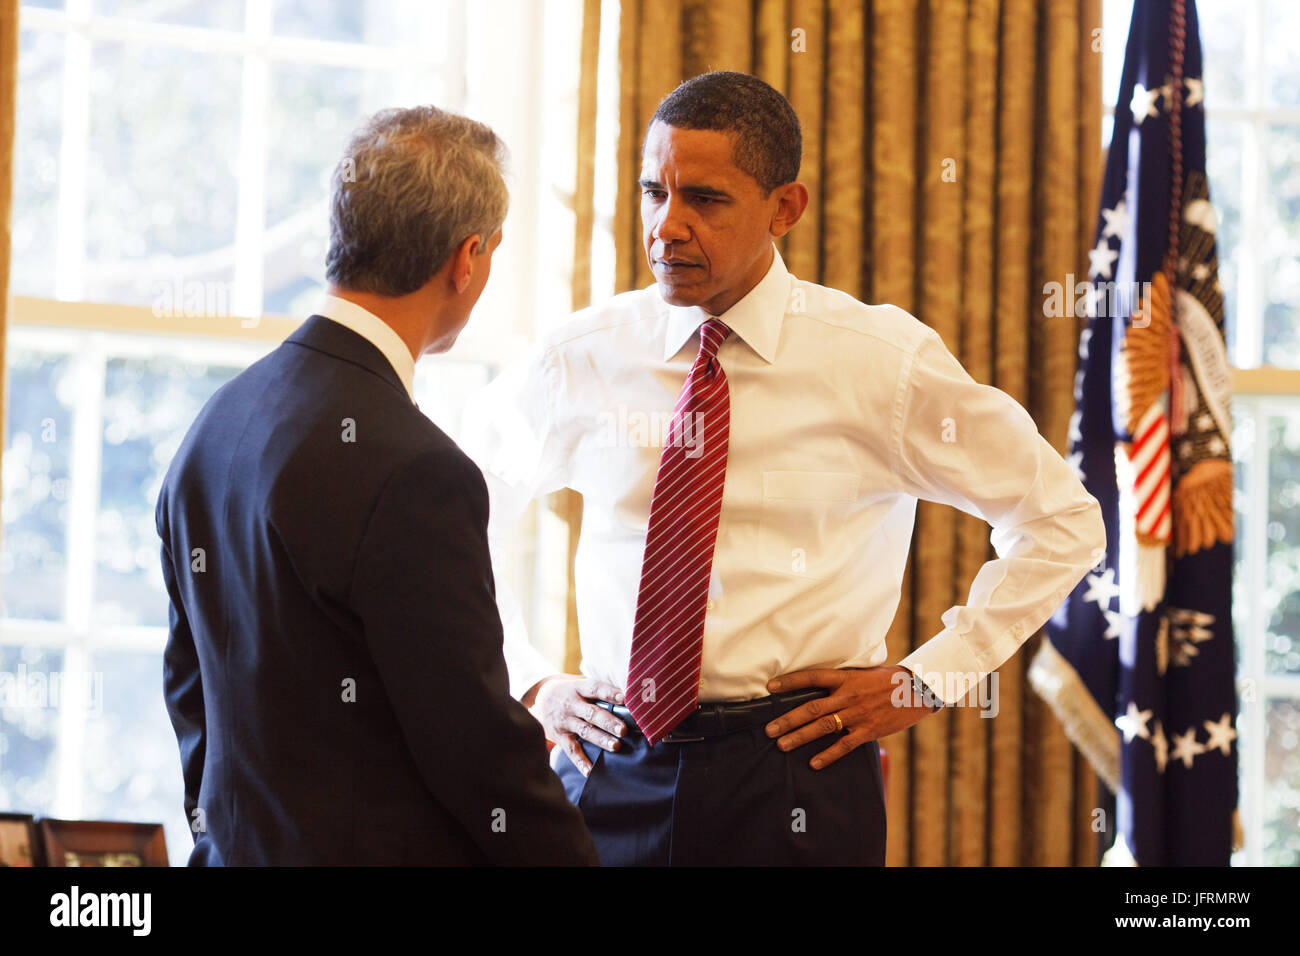 Le président américain Barack Obama avec le chef de cabinet Rahm Emanuel dans le bureau ovale 2/5/09. Photo Officiel de la Maison Blanche par Pete Souza Banque D'Images